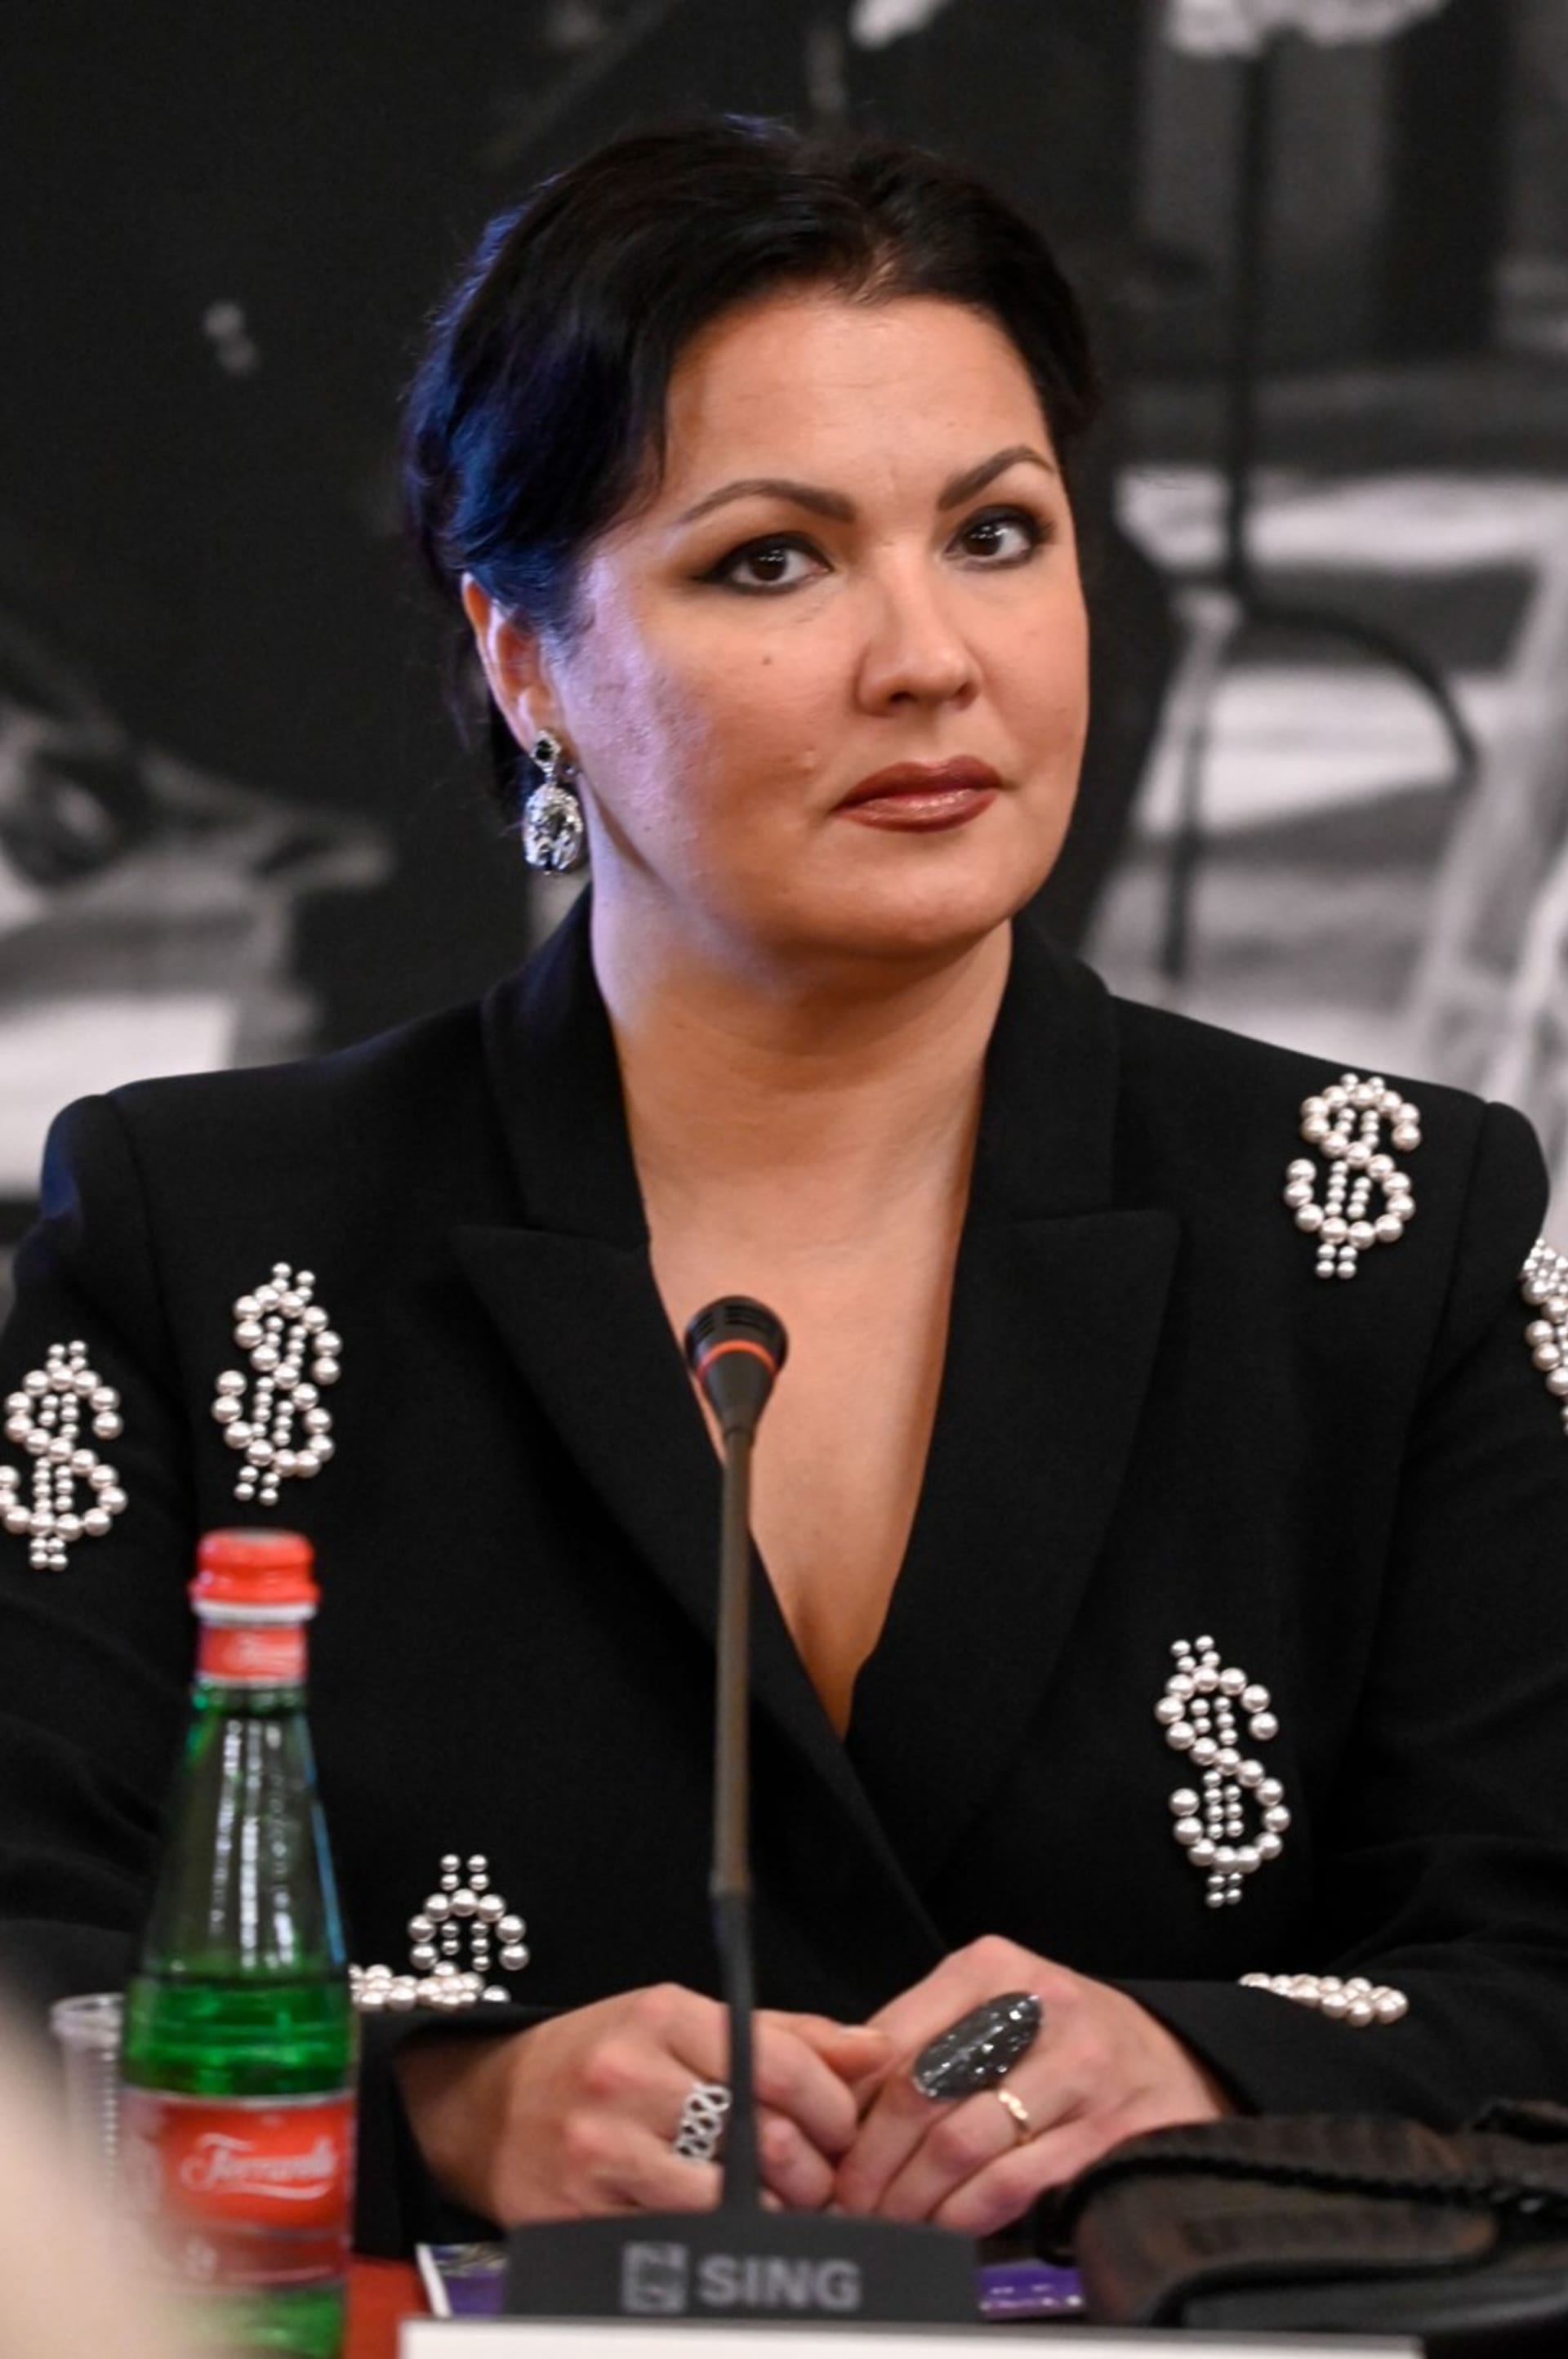 Anna Nětrebková